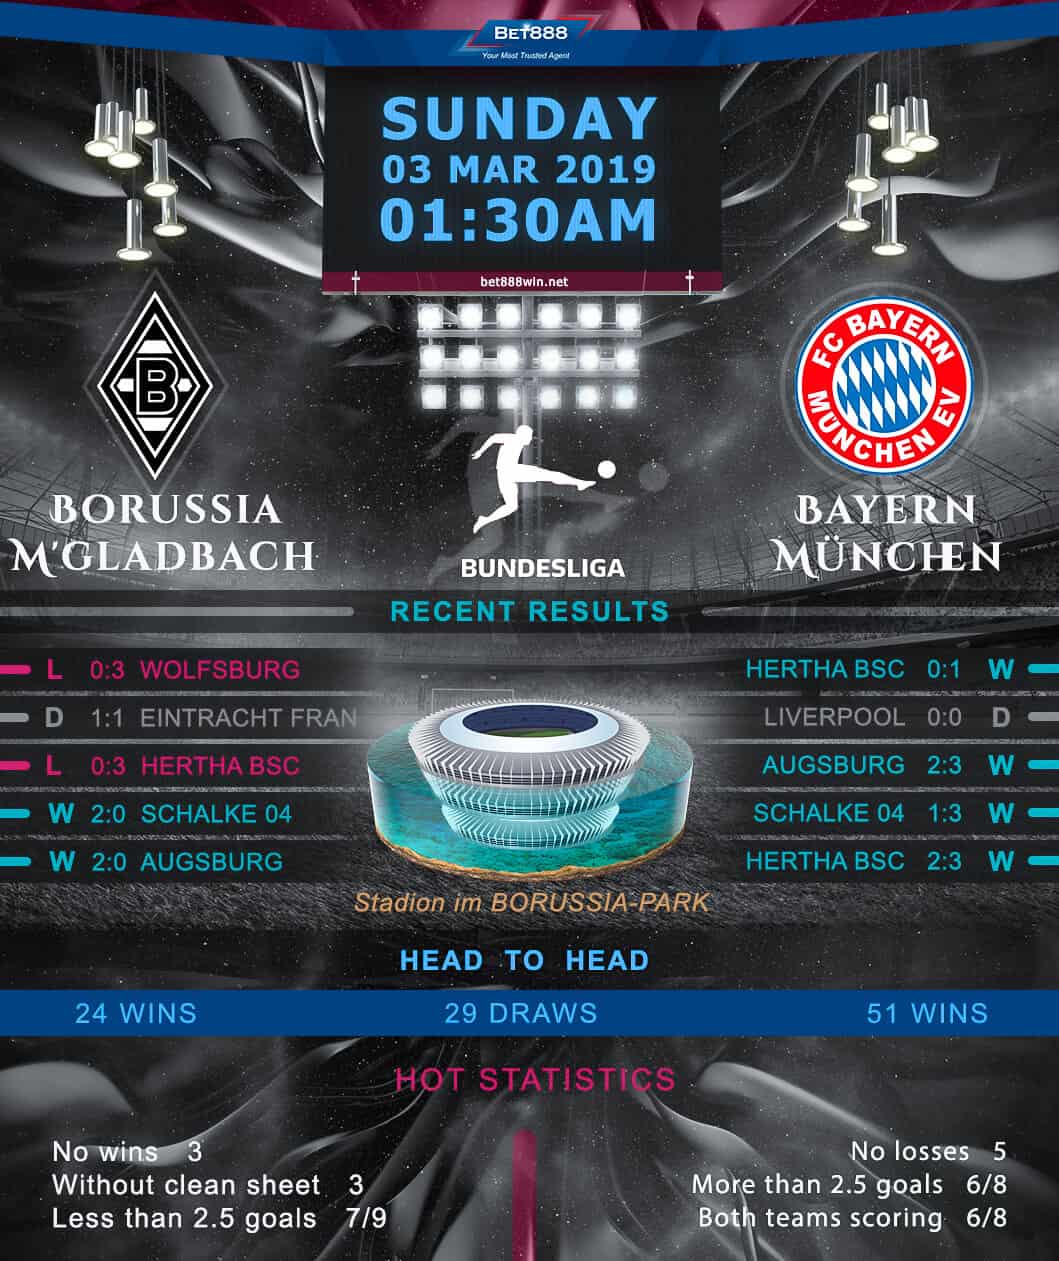 Borussia Monchengladbach vs Bayern Munich 03/03/19